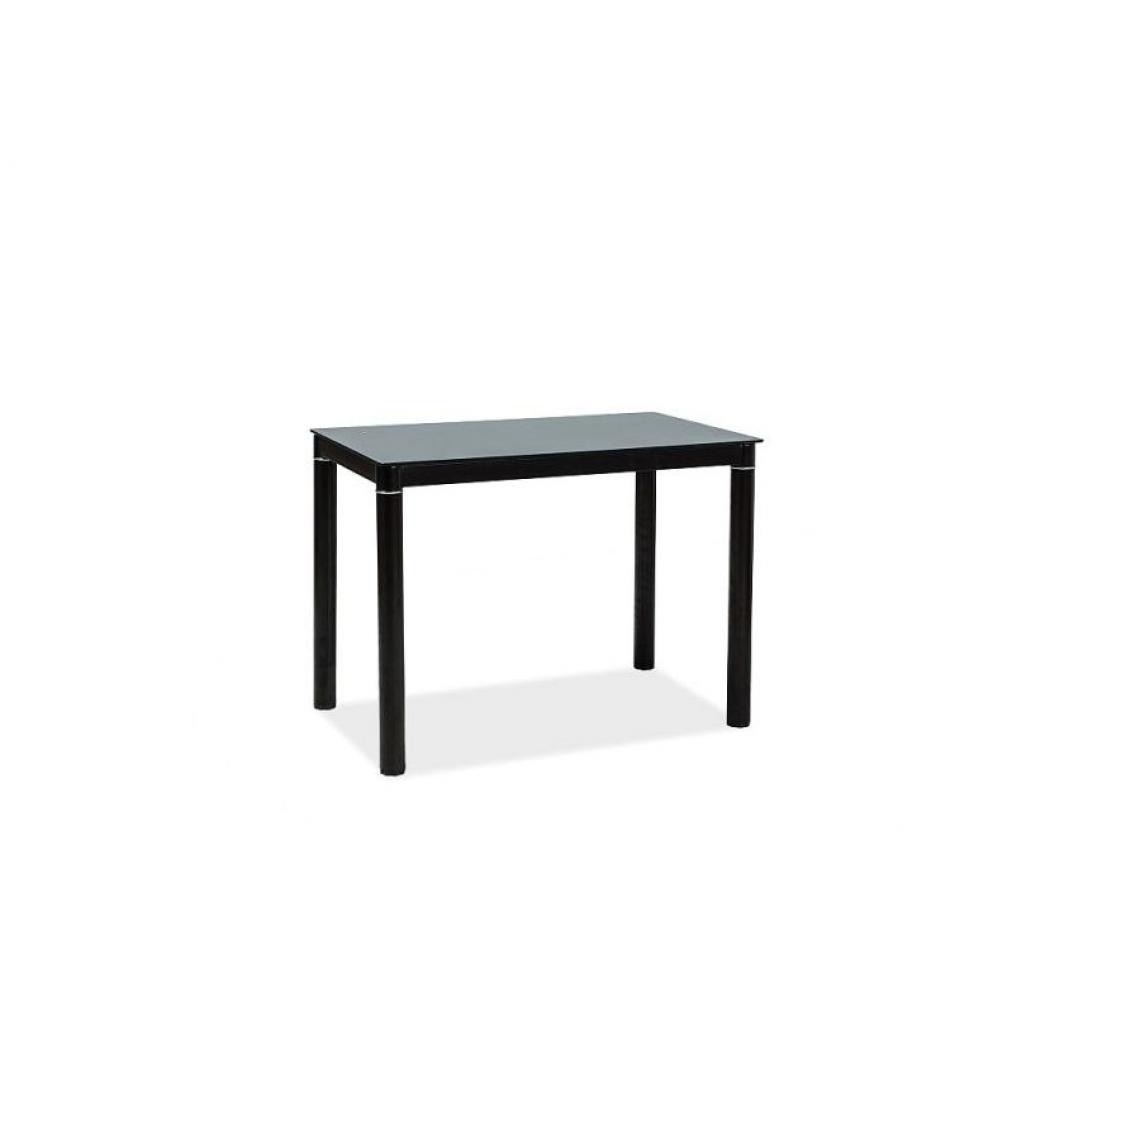 Hucoco - GARANT - Table moderne pour salle à manger salon - 100x60x75 cm - Plateau en verre - Pieds en métal - Noir - Tables à manger